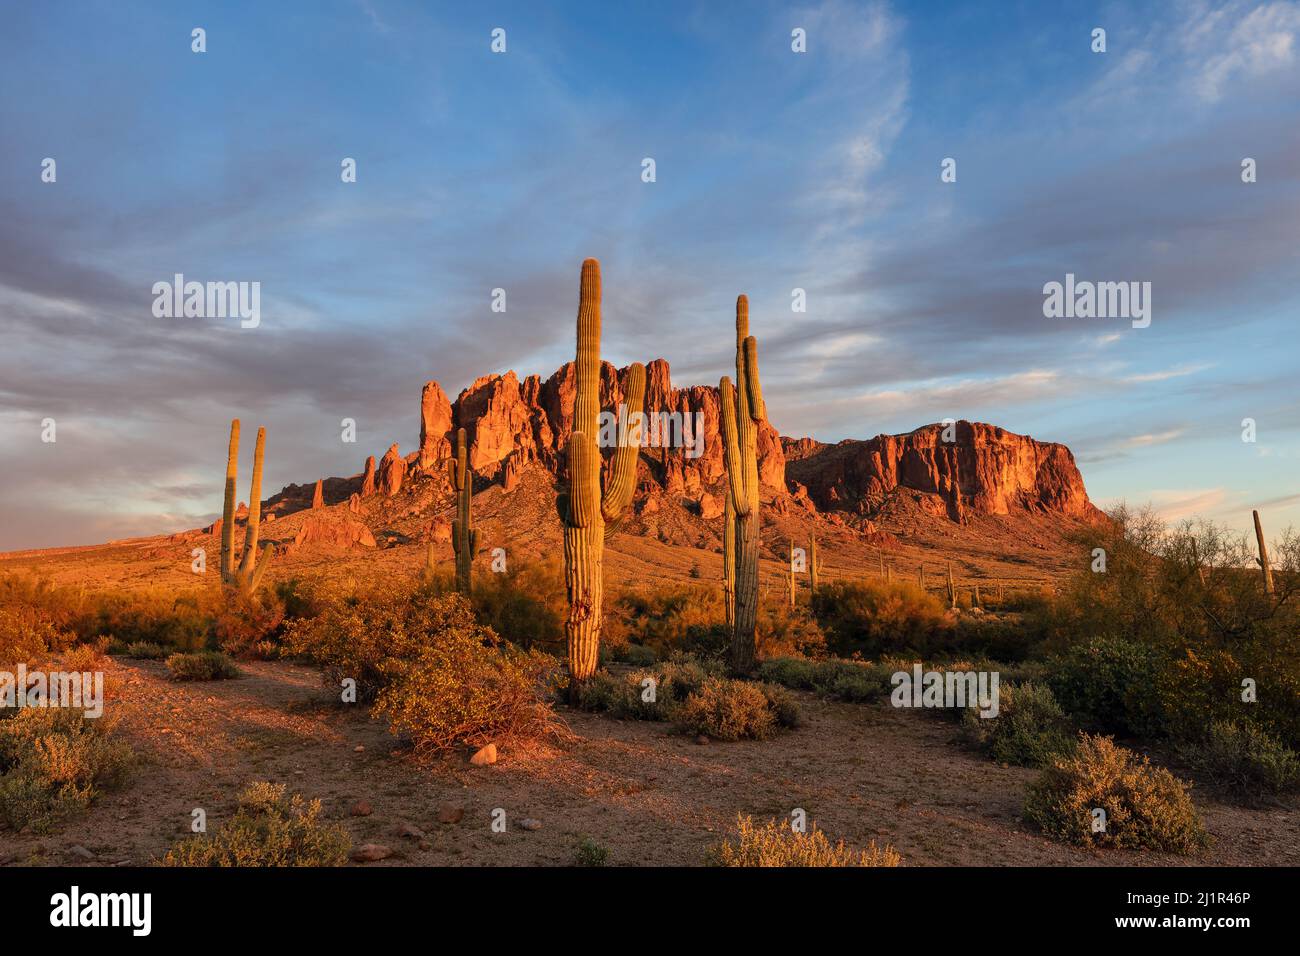 Paisaje escénico del desierto en las Montañas Superstition en el Parque Estatal Lost Dutchman, Arizona, Estados Unidos Foto de stock